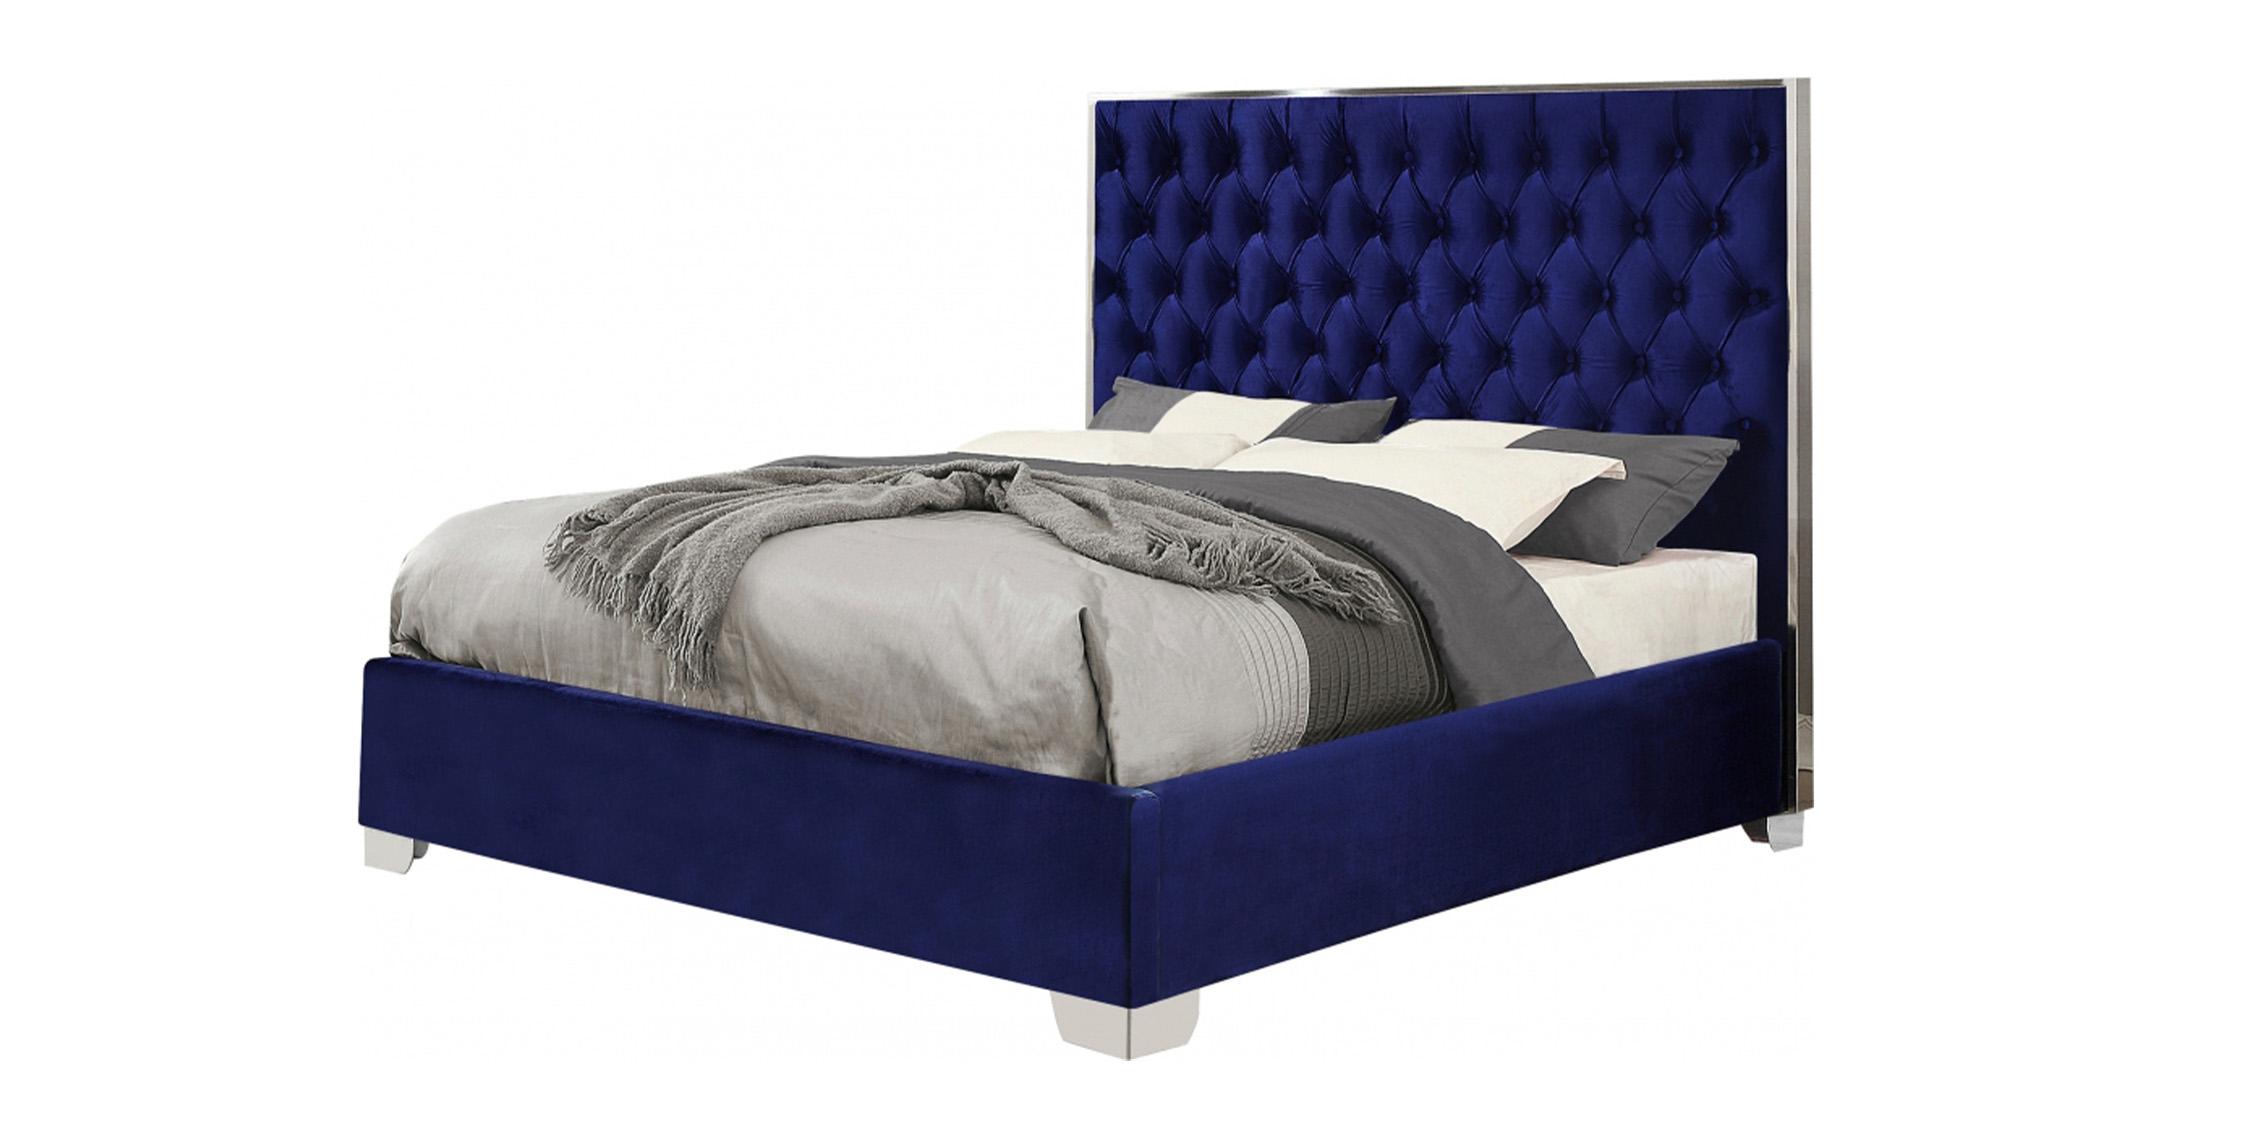 Meridian Furniture LexiNavy-F Platform Bed